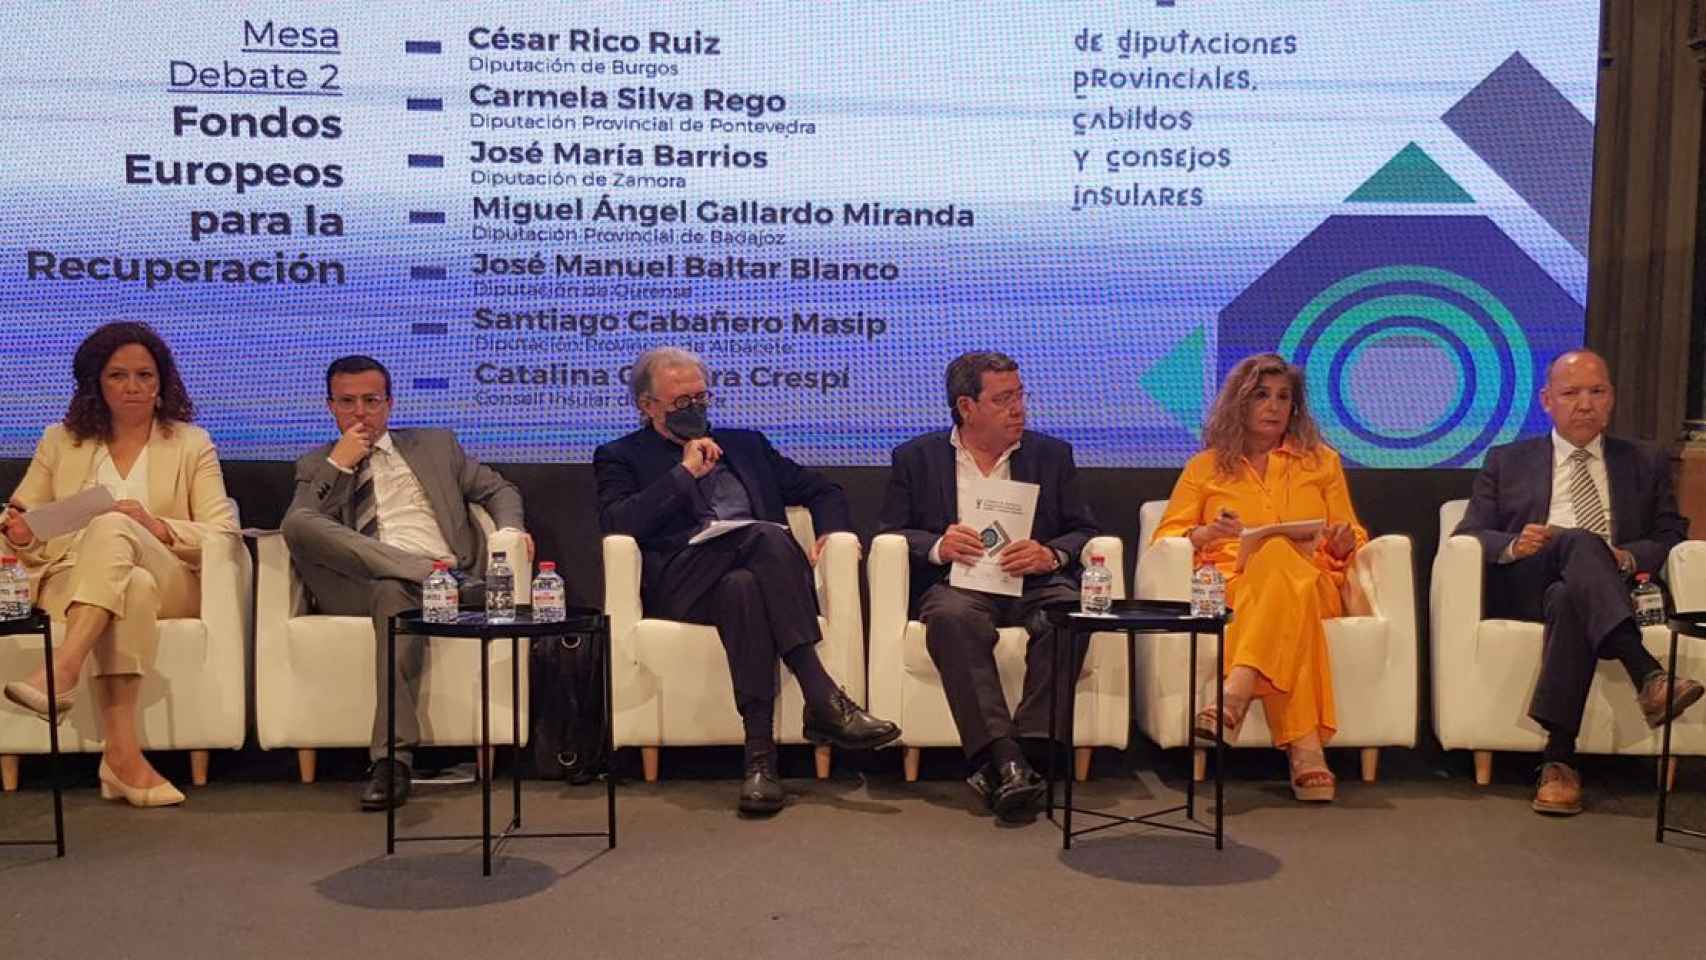 José María Barrios debate con el resto de líderes de instituciones provinciales su papel en los Fondos Europeos